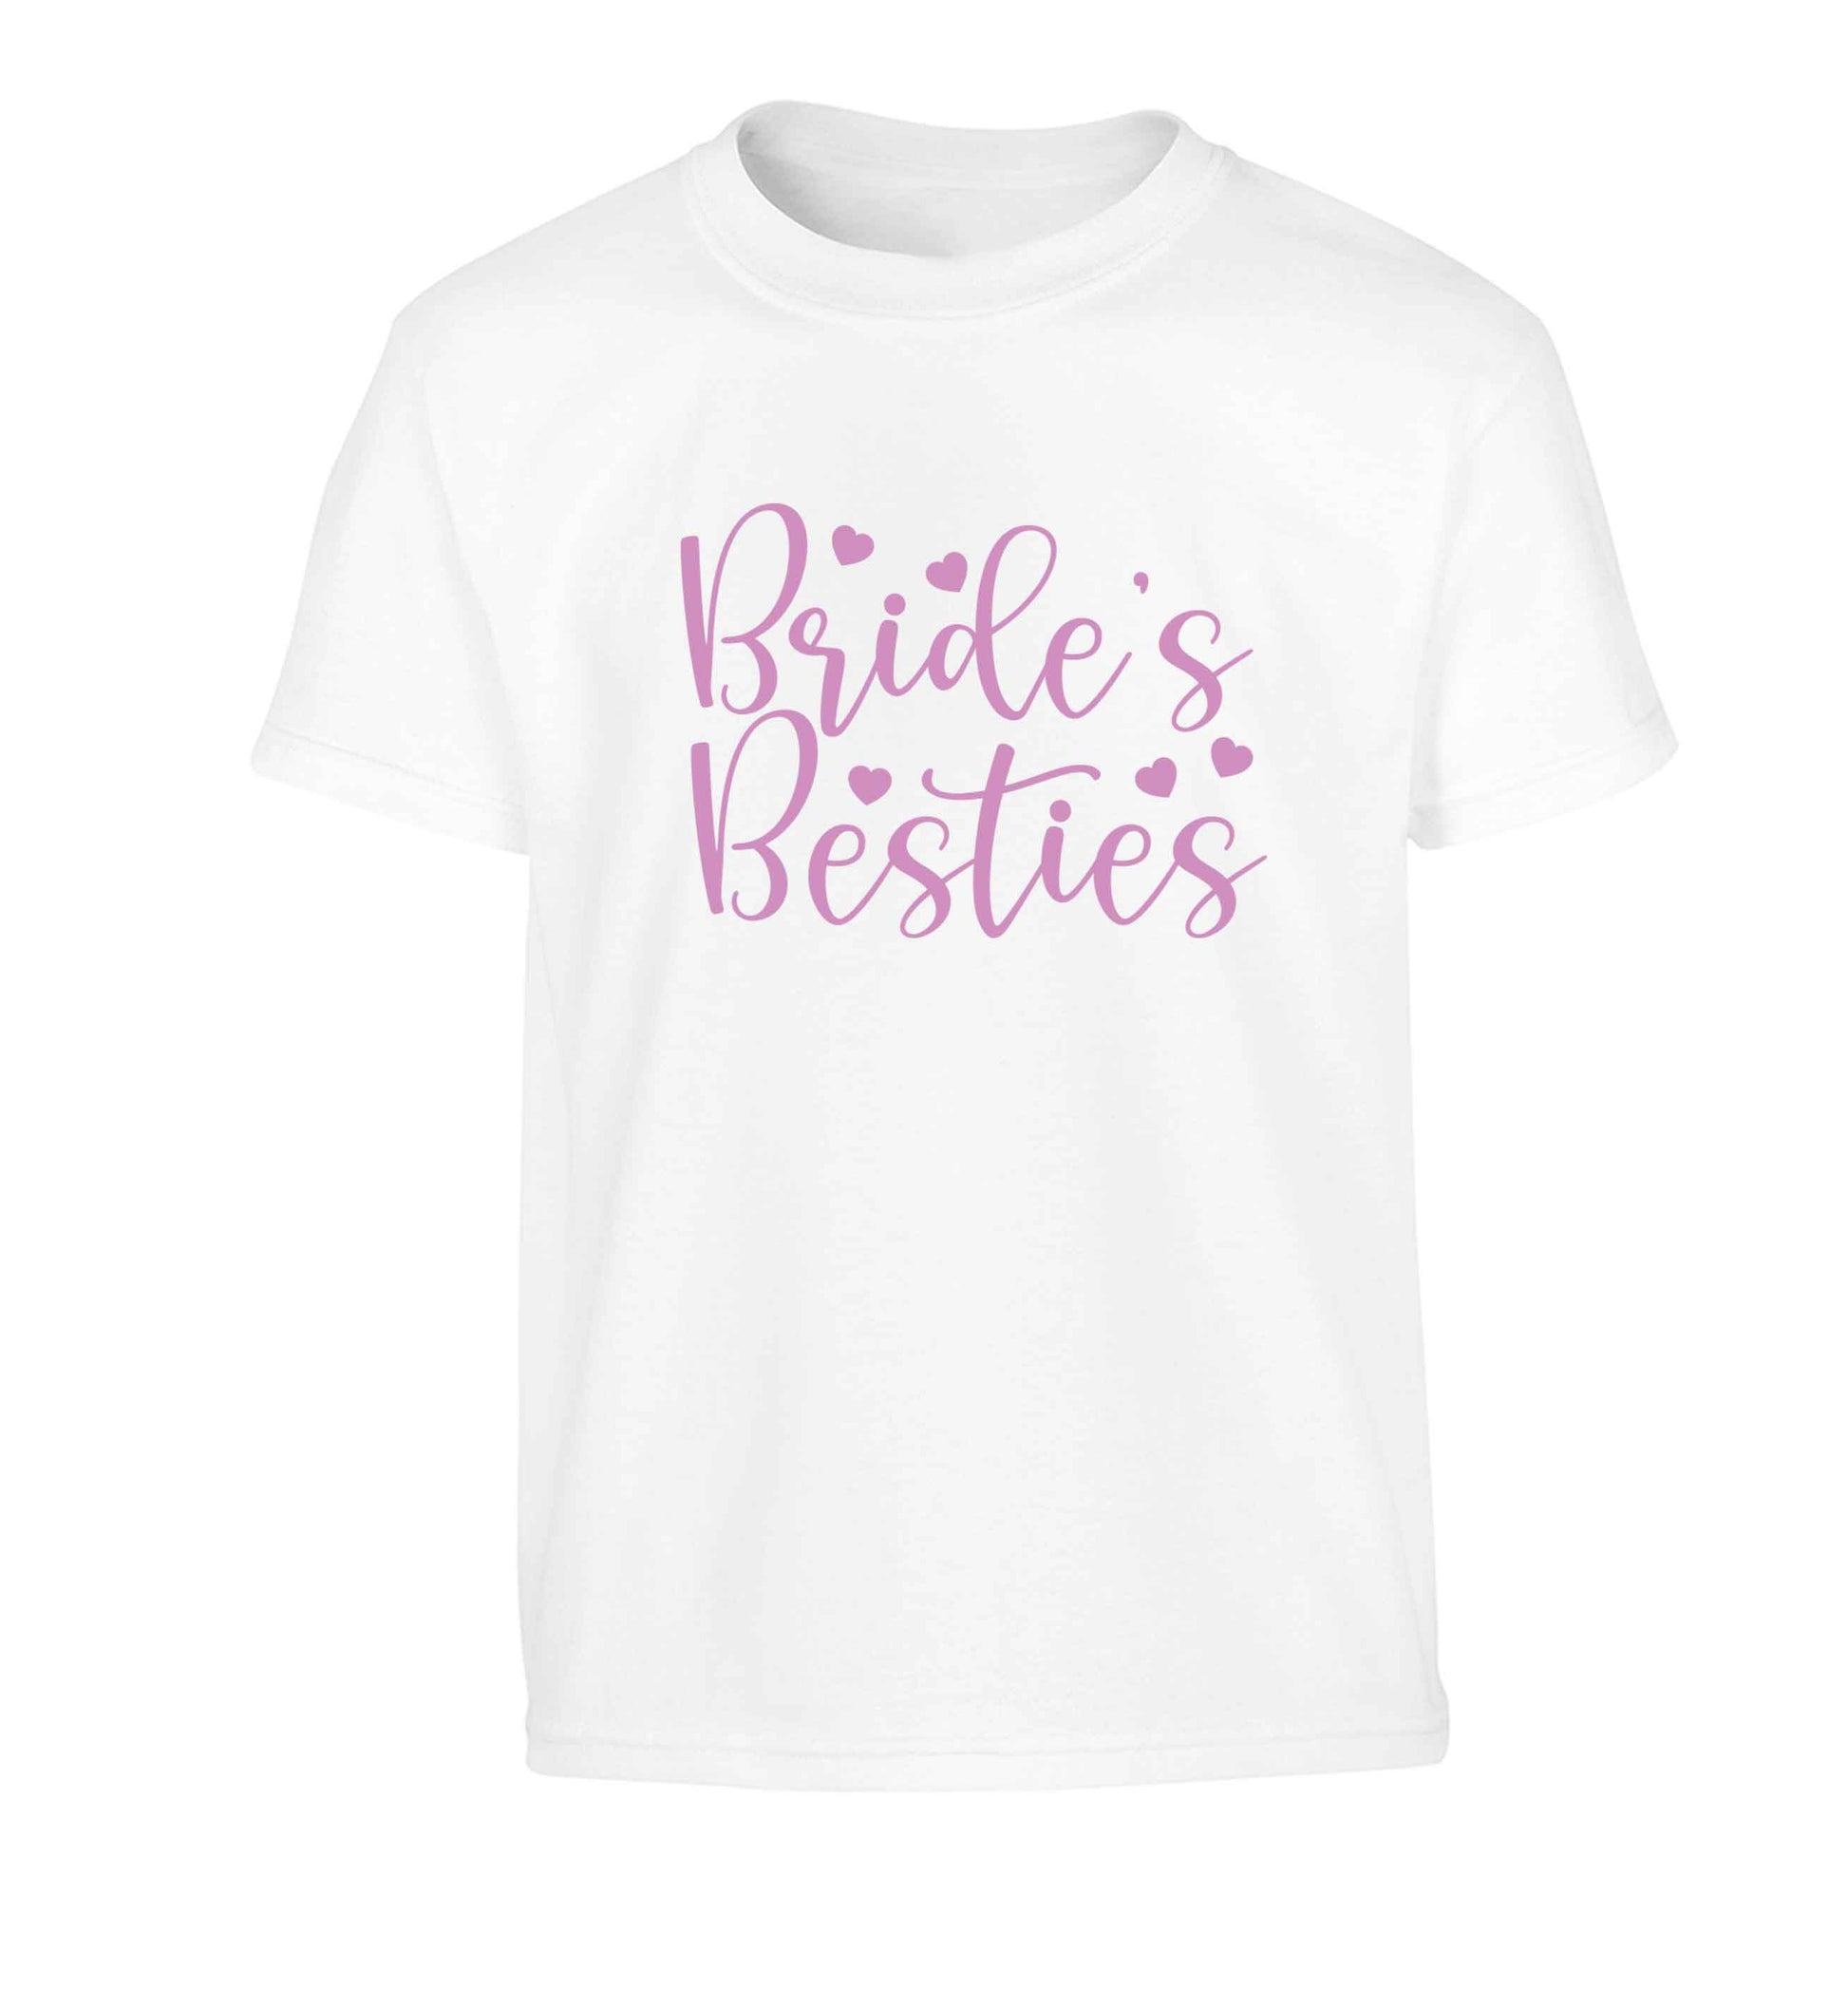 Brides besties Children's white Tshirt 12-13 Years